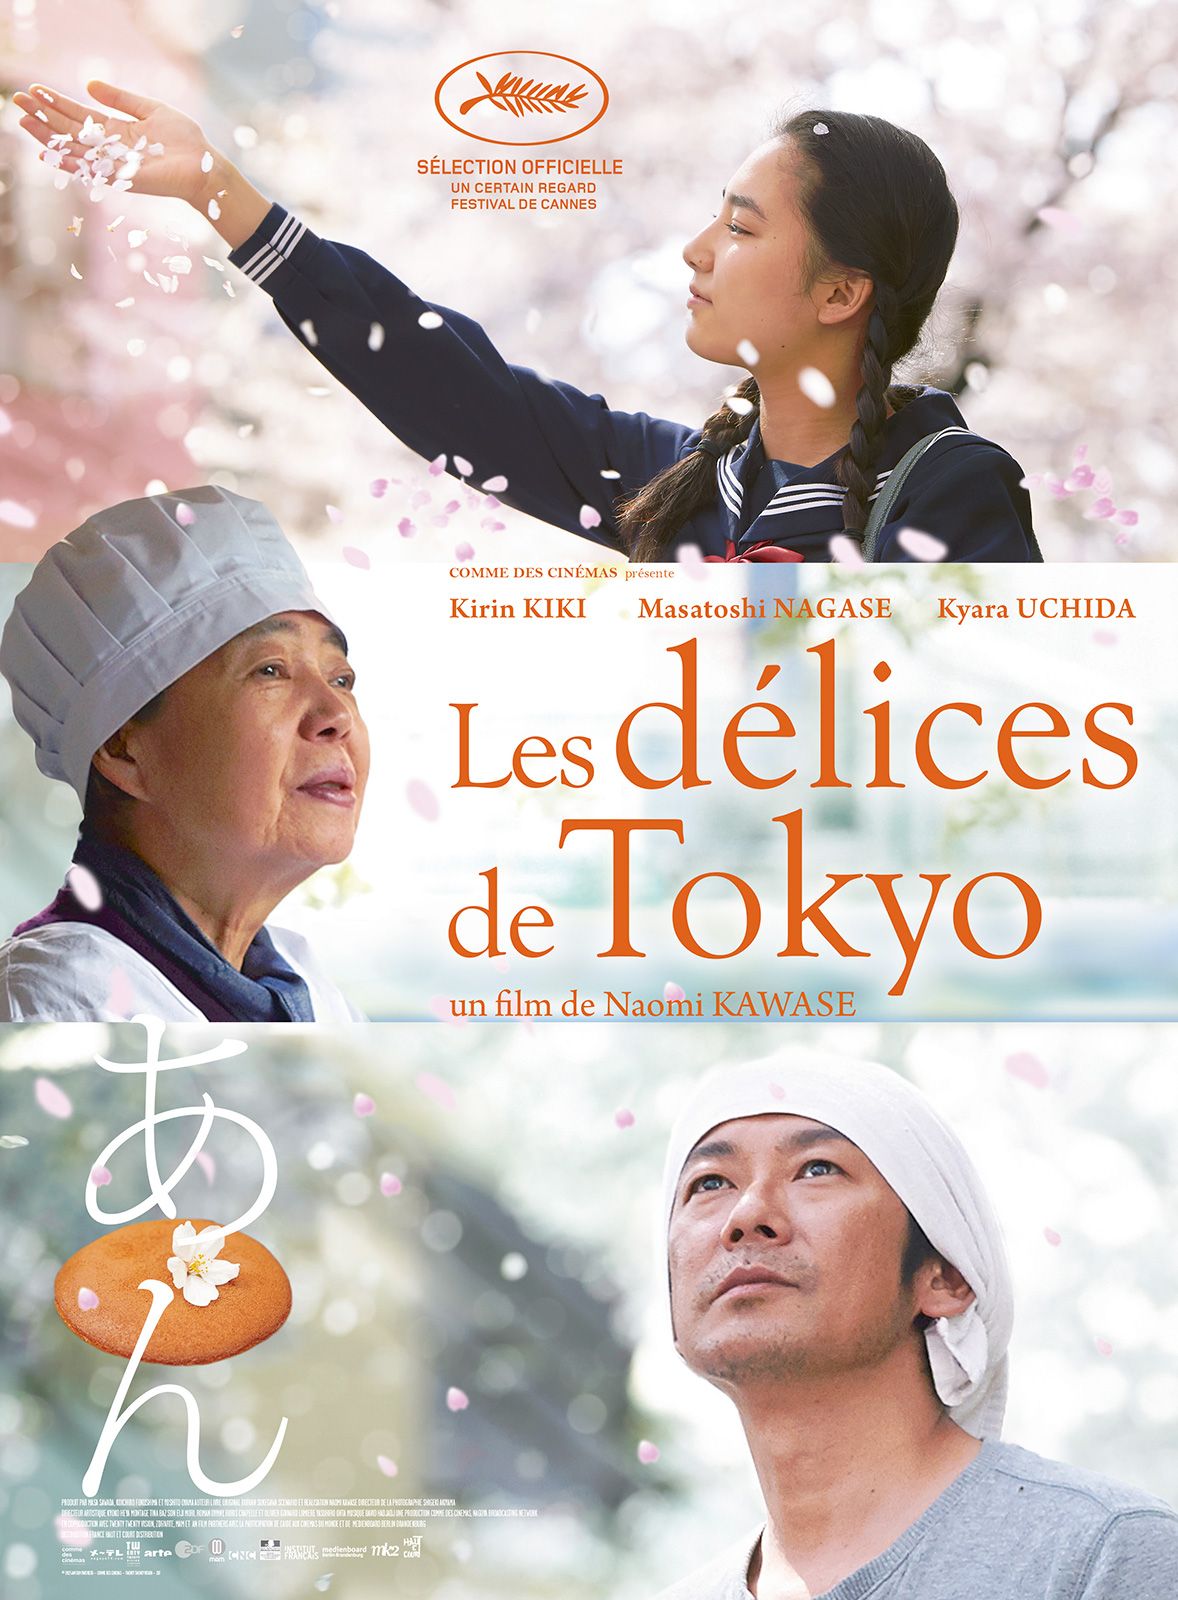 Ces films qui vous ont touché-e / ému-e... - Page 5 Les_Delices_de_Tokyo